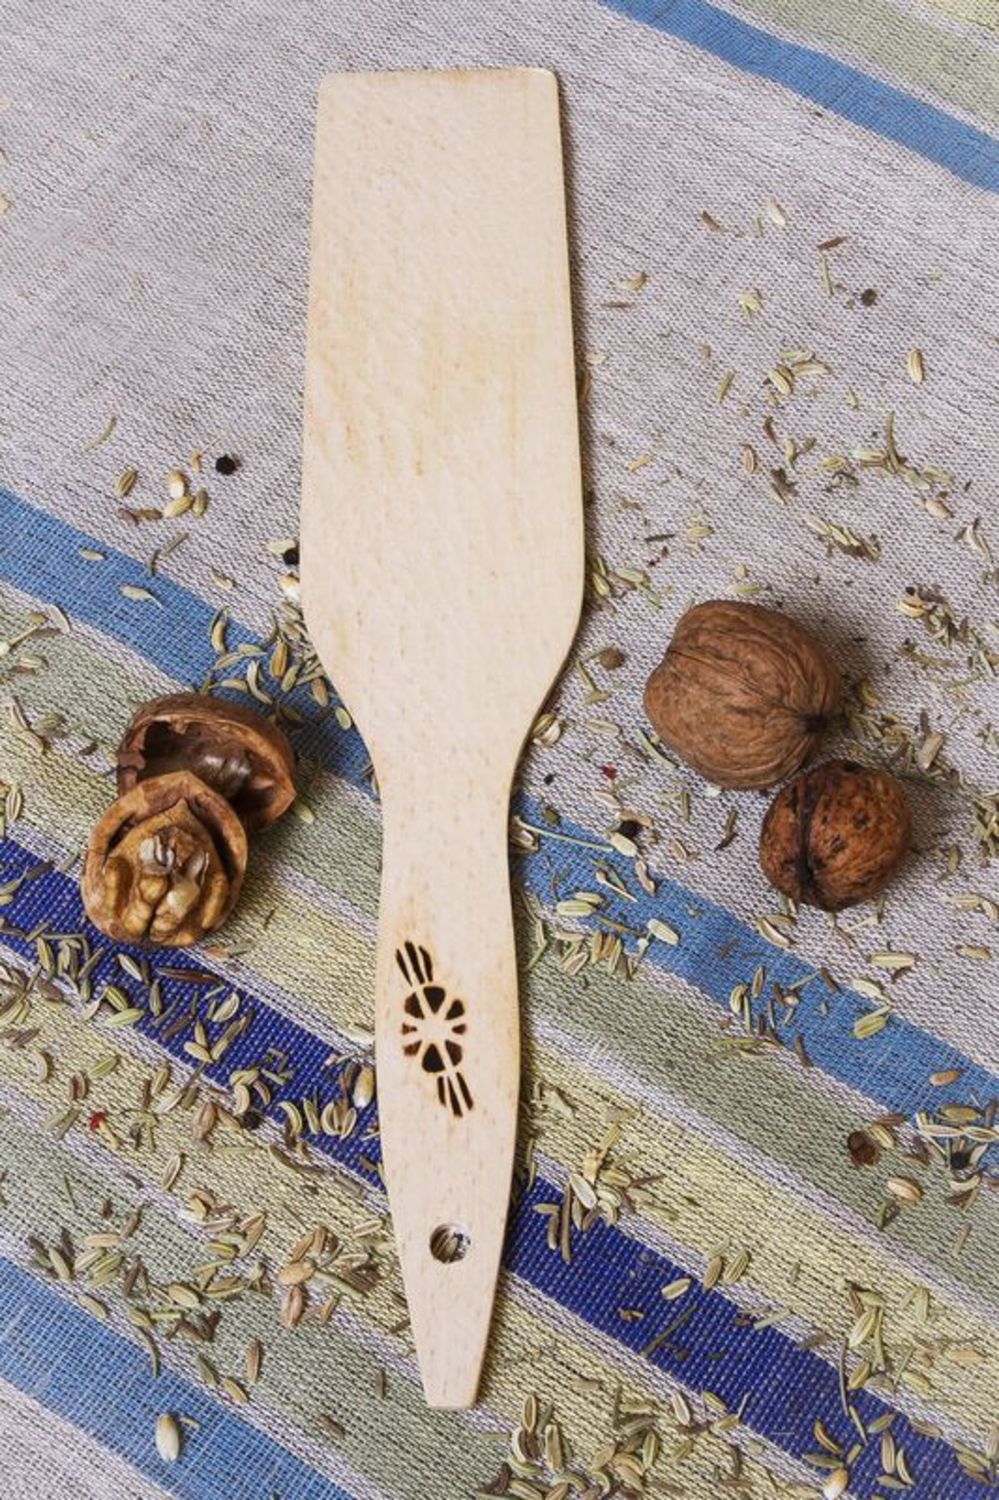 Wooden kitchen spatula photo 1